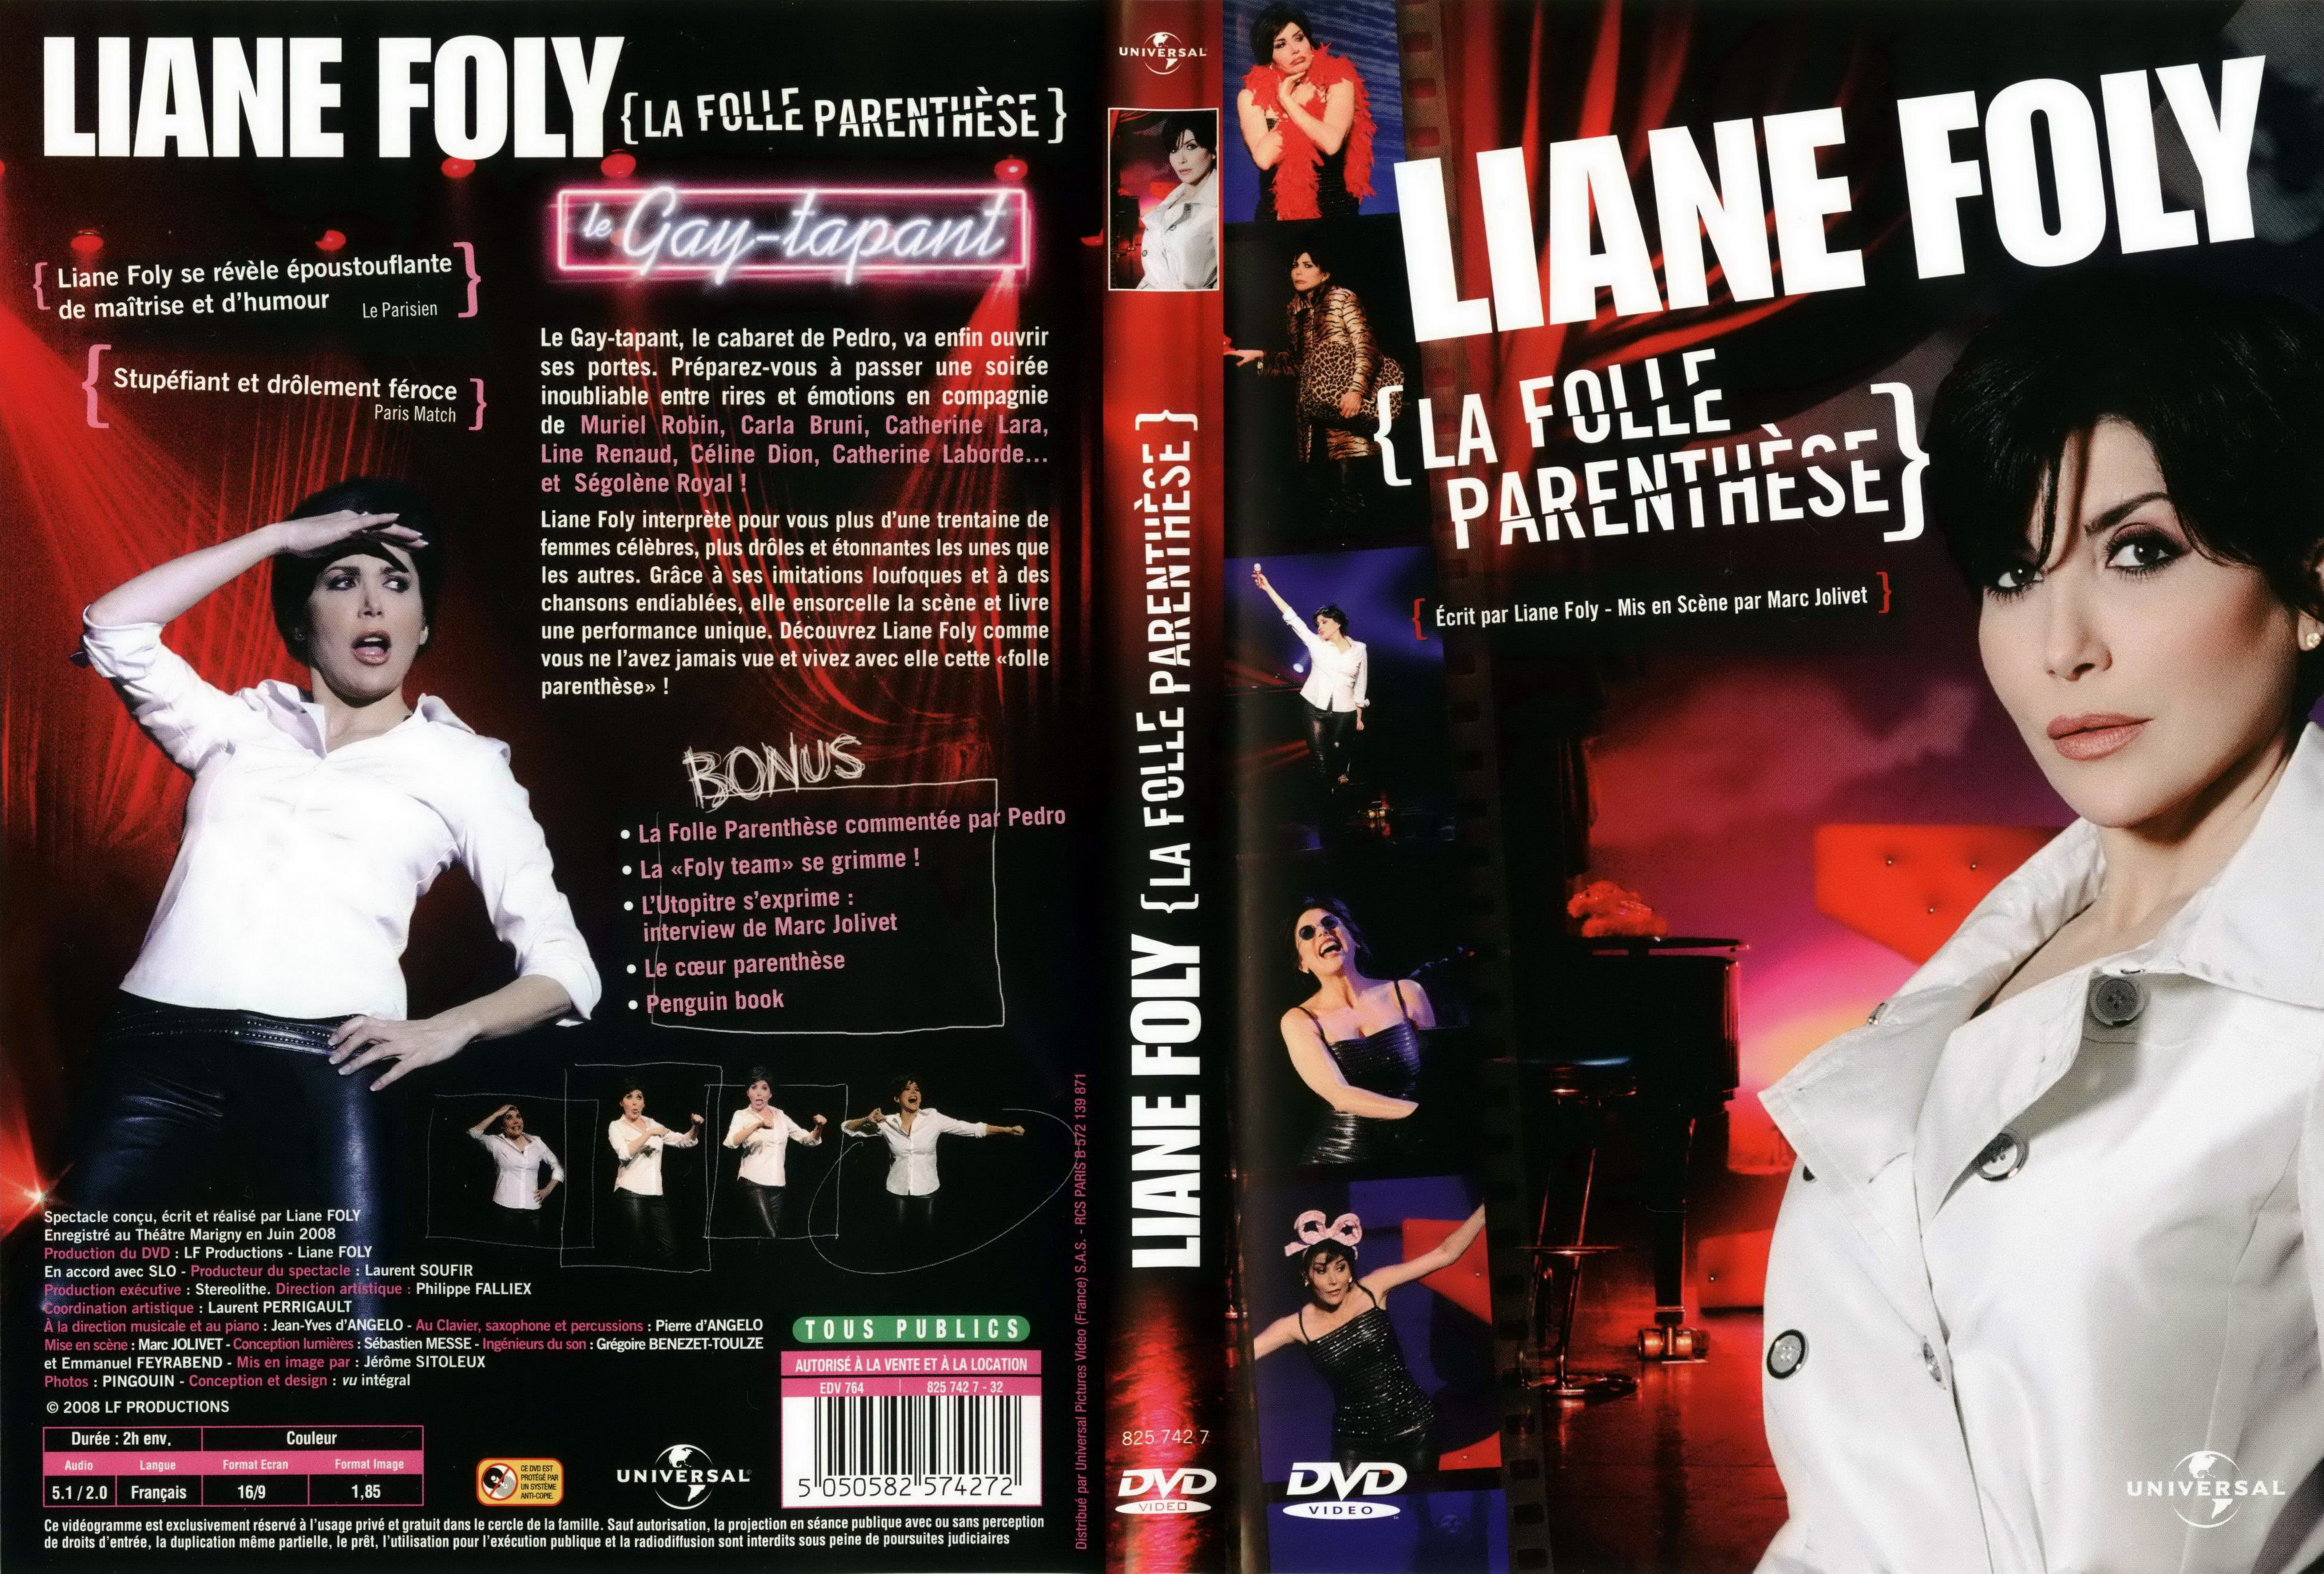 Jaquette DVD Liane Foly La folle parenthse